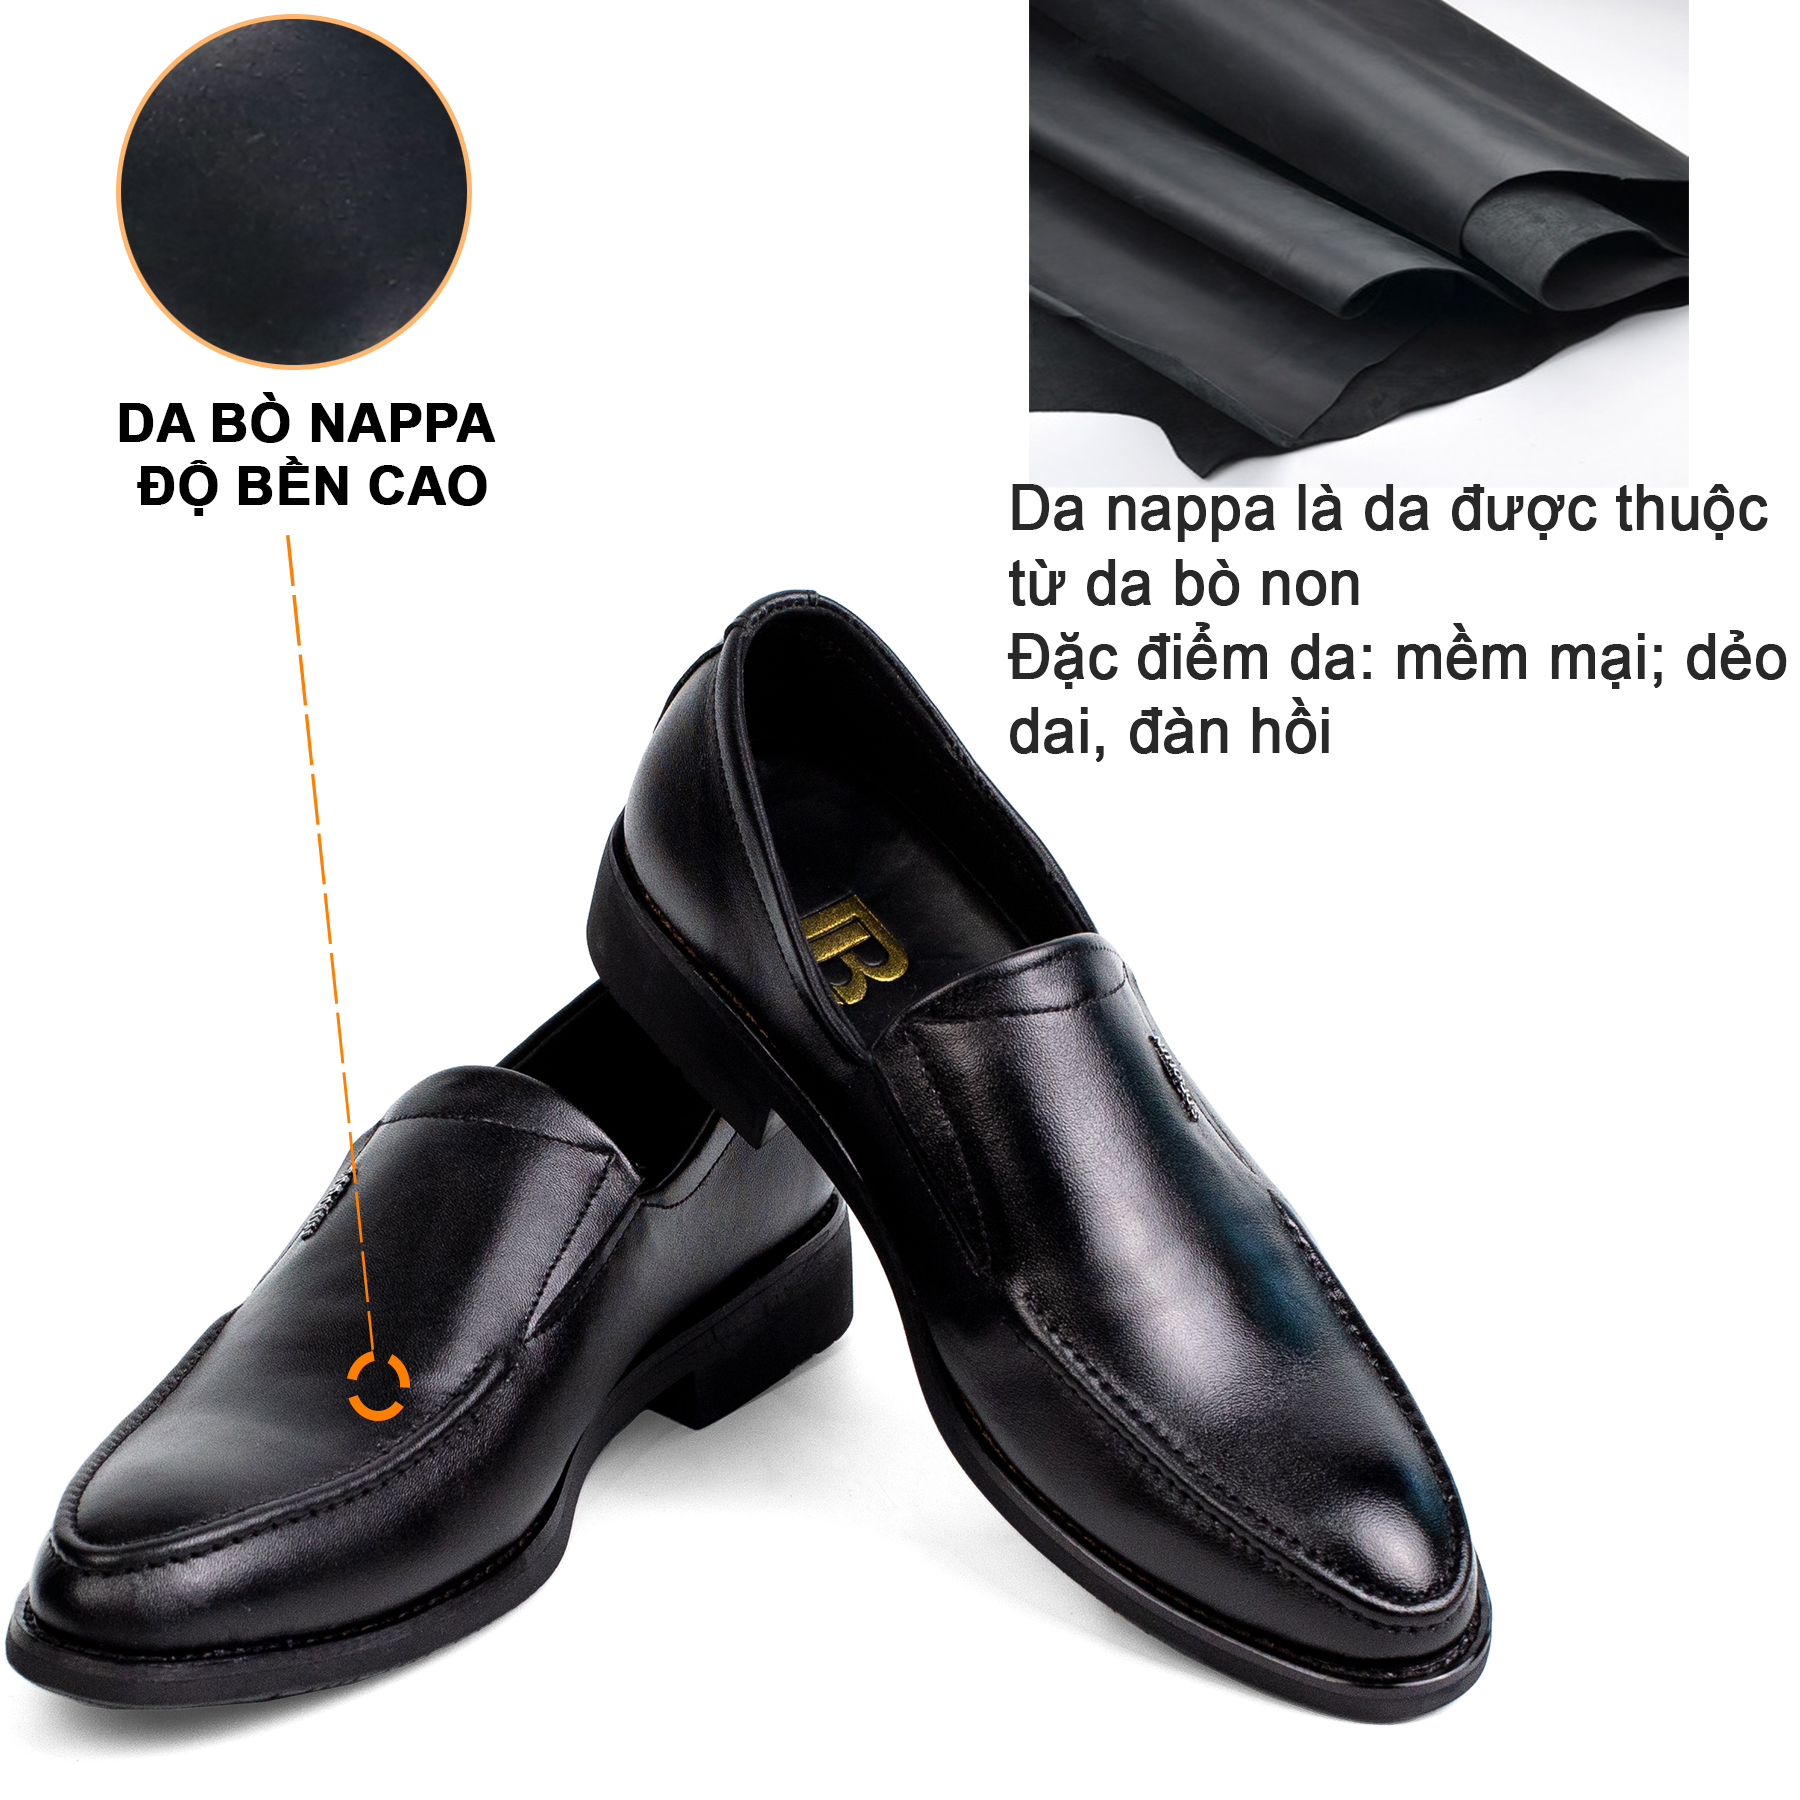 Giày nam công sở da bò nappa cao cấp, giày lười G114- Bụi leather- hộp sang trọng -Bảo hành 12...